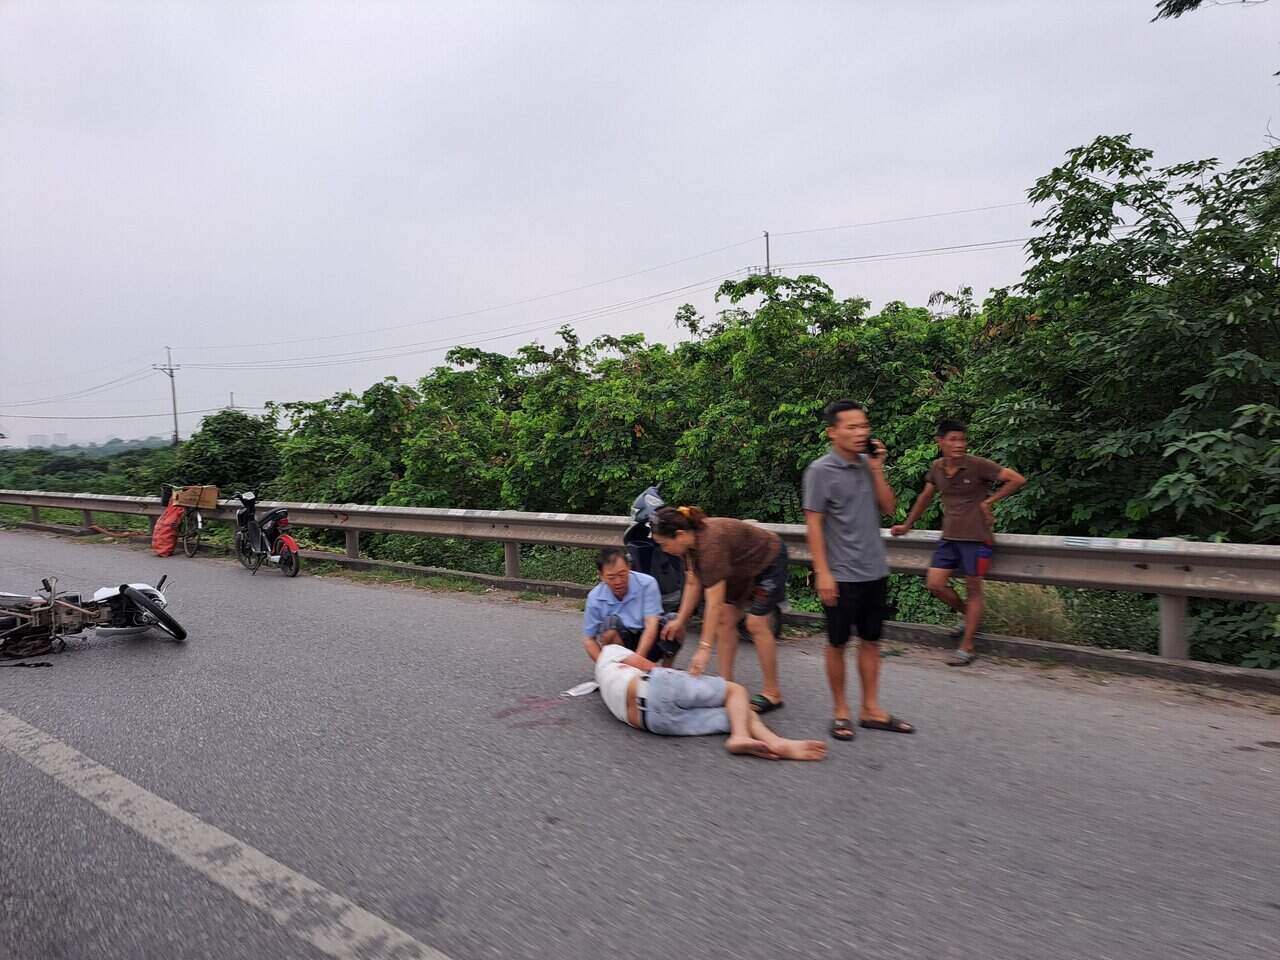 Tại Cầu Phù Đổng, Quốc lộ 1 đã một vụ tai nạn giao thông khiến 1 người bị thương. Ảnh: Khánh Linh.